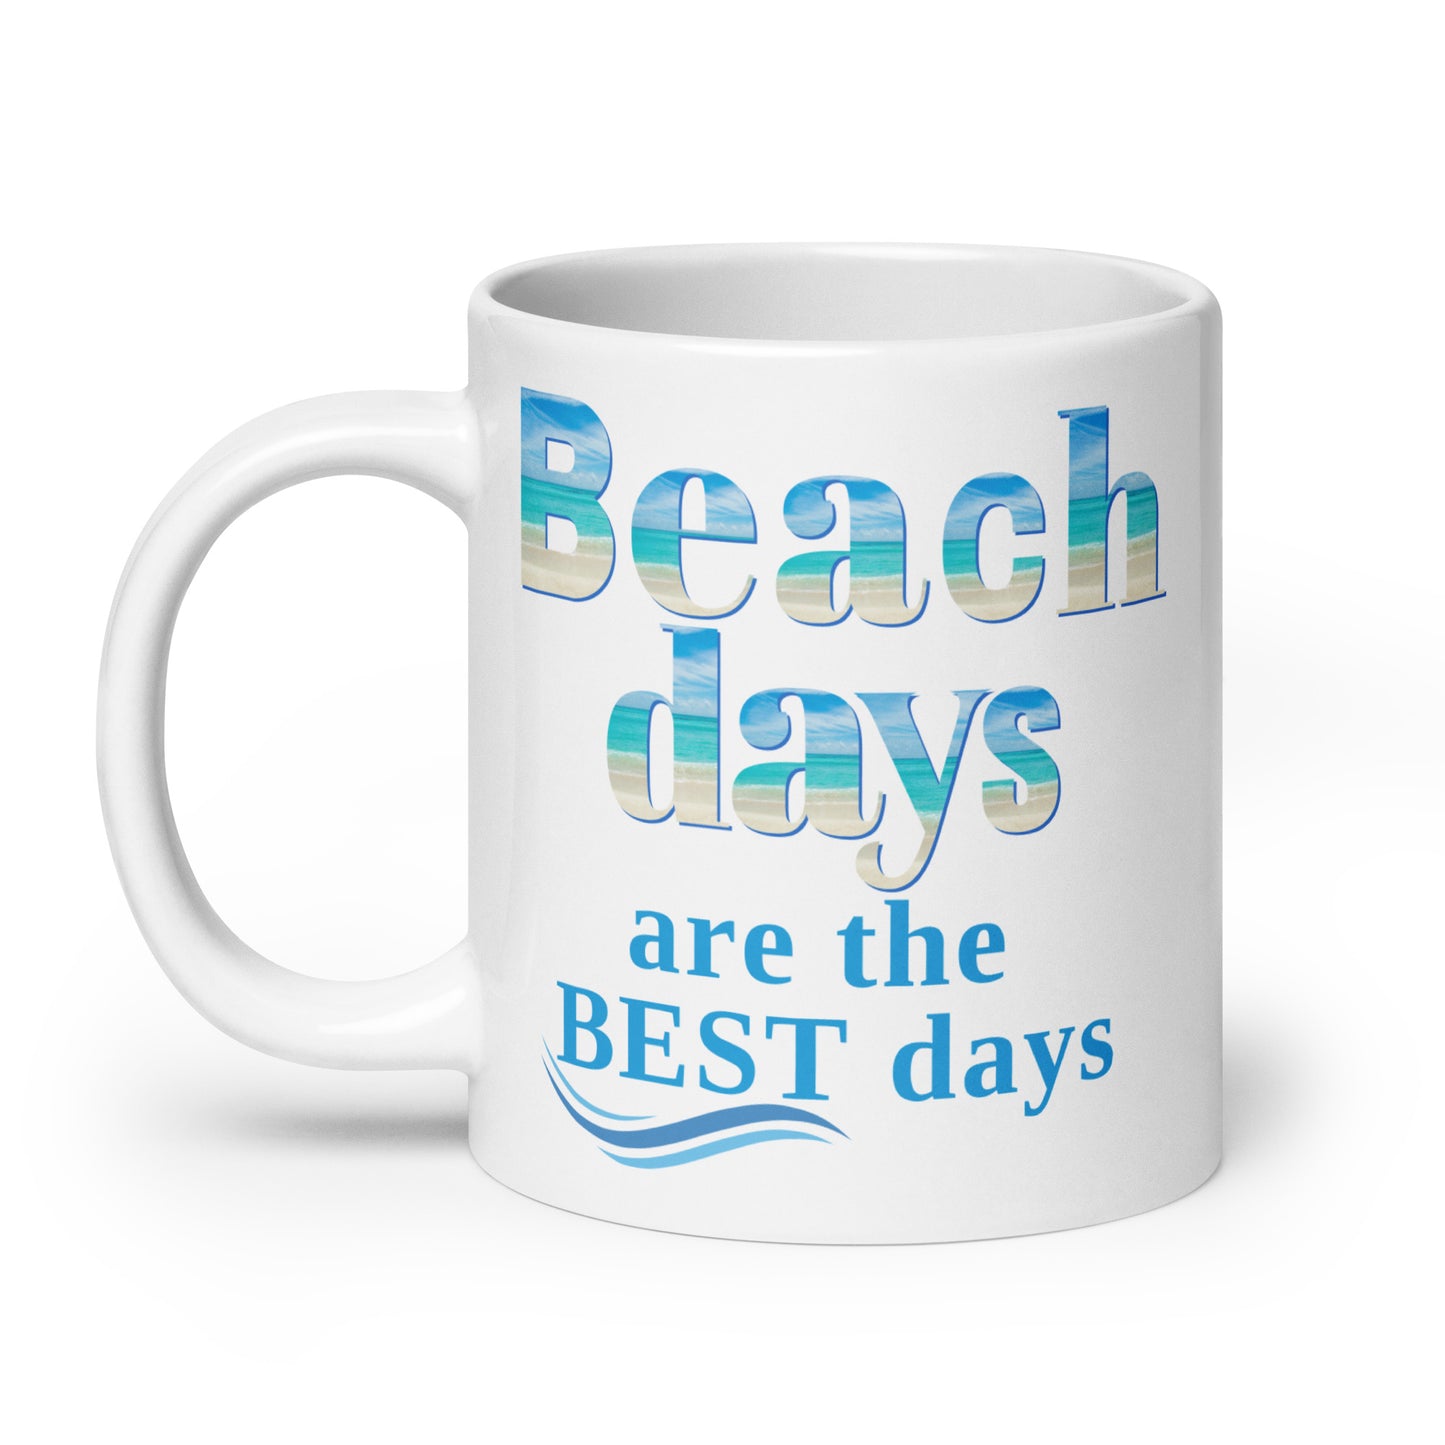 White Glossy Mug - Beach Days are the Best Days